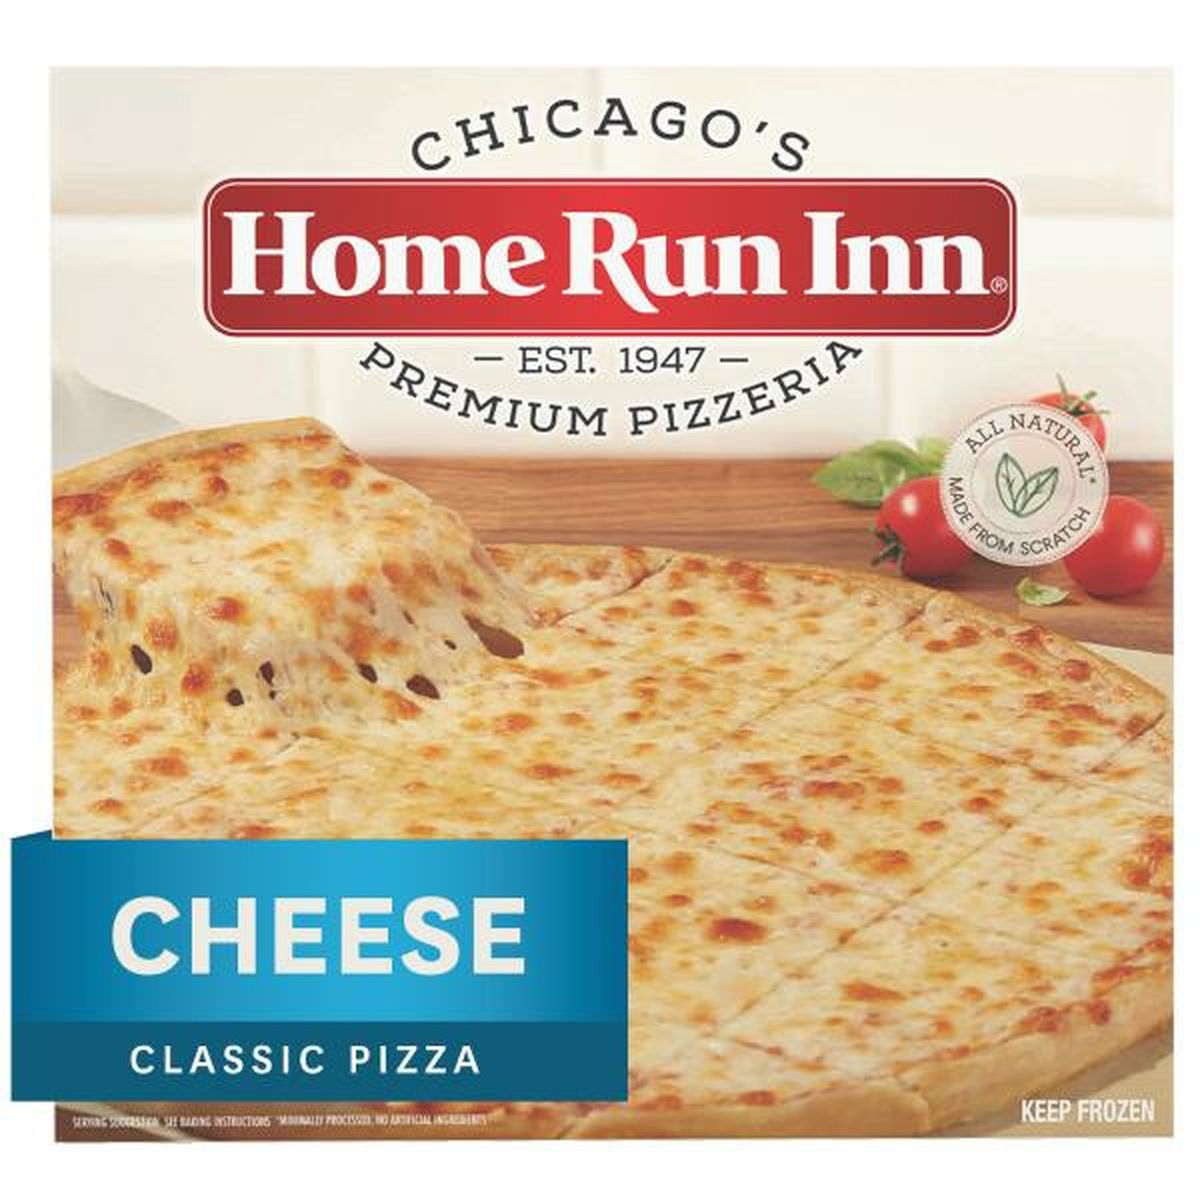 home run inn pizza publix